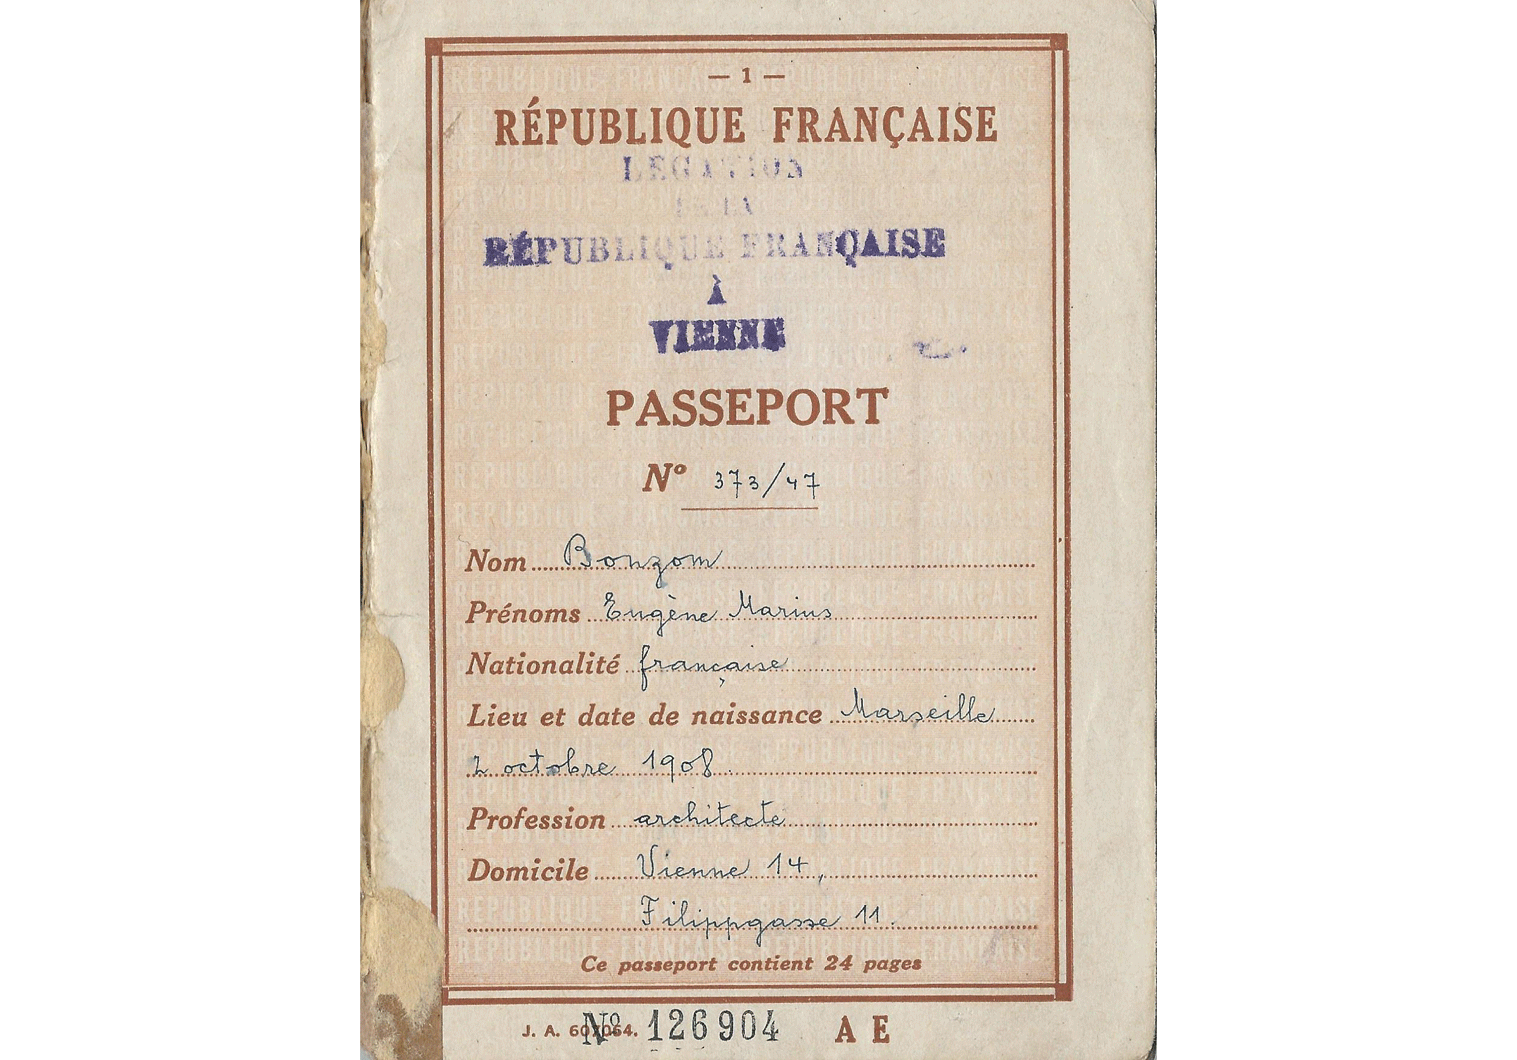 Post-War passport for Vienna